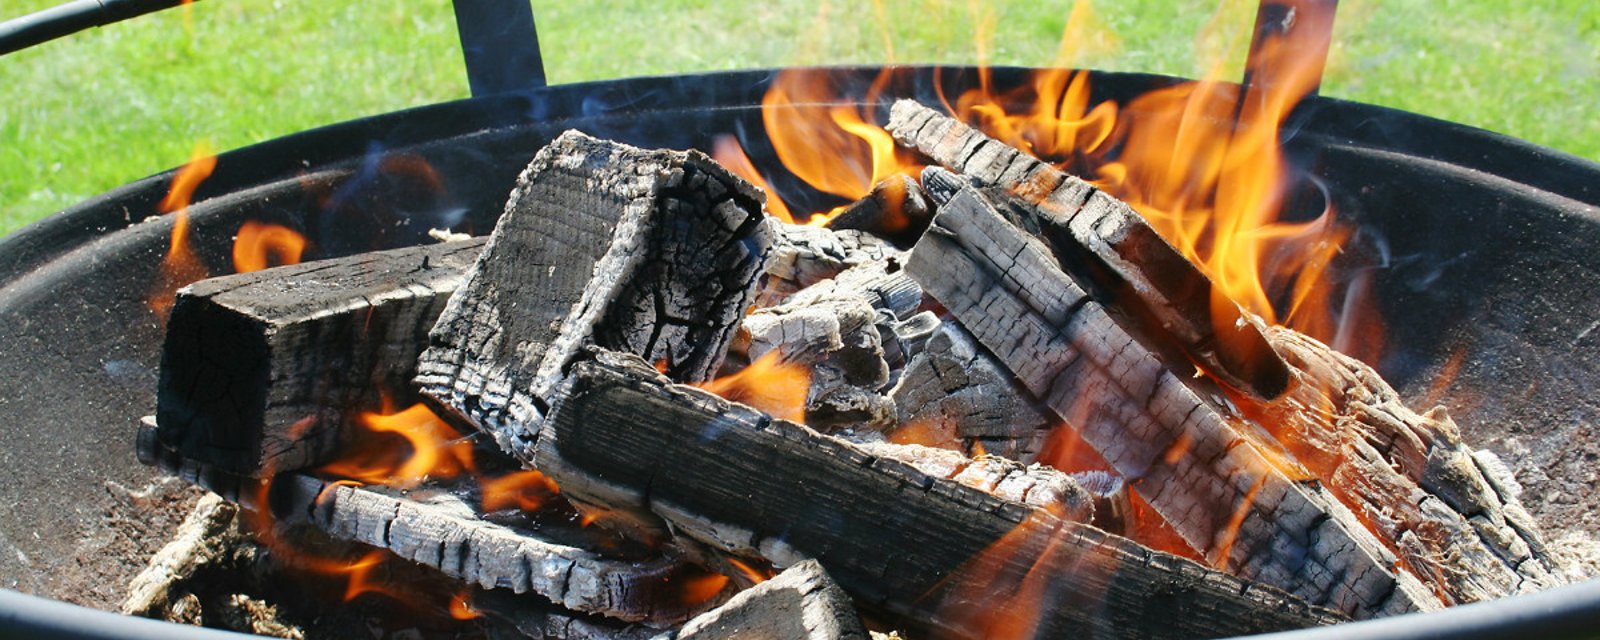 Voici pourquoi vous devriez conserver et utiliser la cendre de vos feux de bois! C’est loin d’être un déchet!